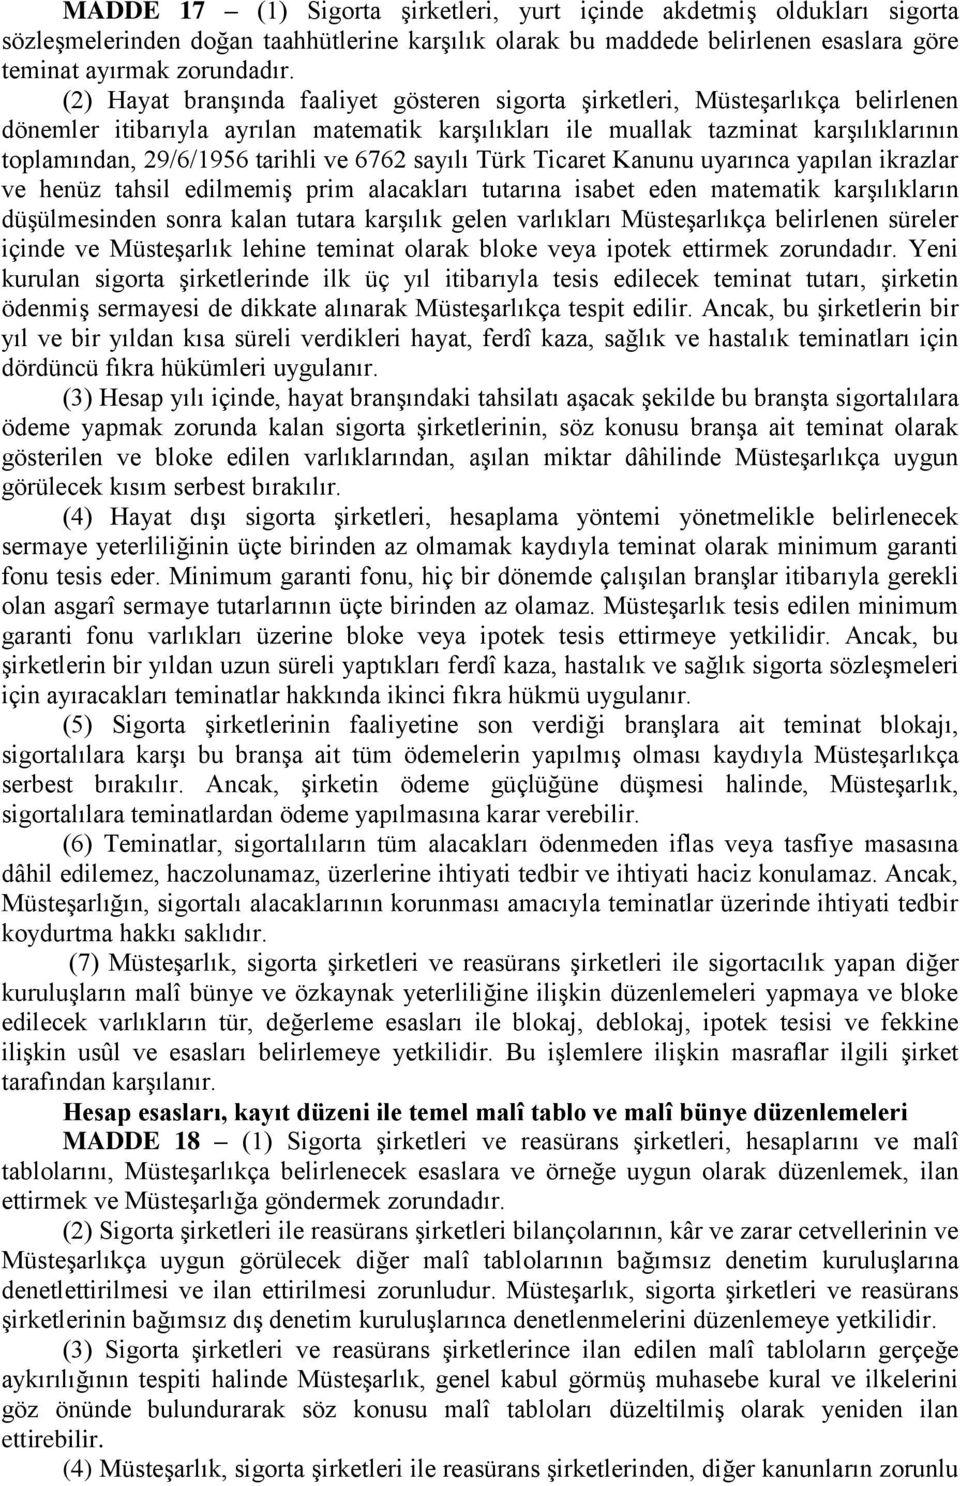 tarihli ve 6762 sayılı Türk Ticaret Kanunu uyarınca yapılan ikrazlar ve henüz tahsil edilmemiş prim alacakları tutarına isabet eden matematik karşılıkların düşülmesinden sonra kalan tutara karşılık